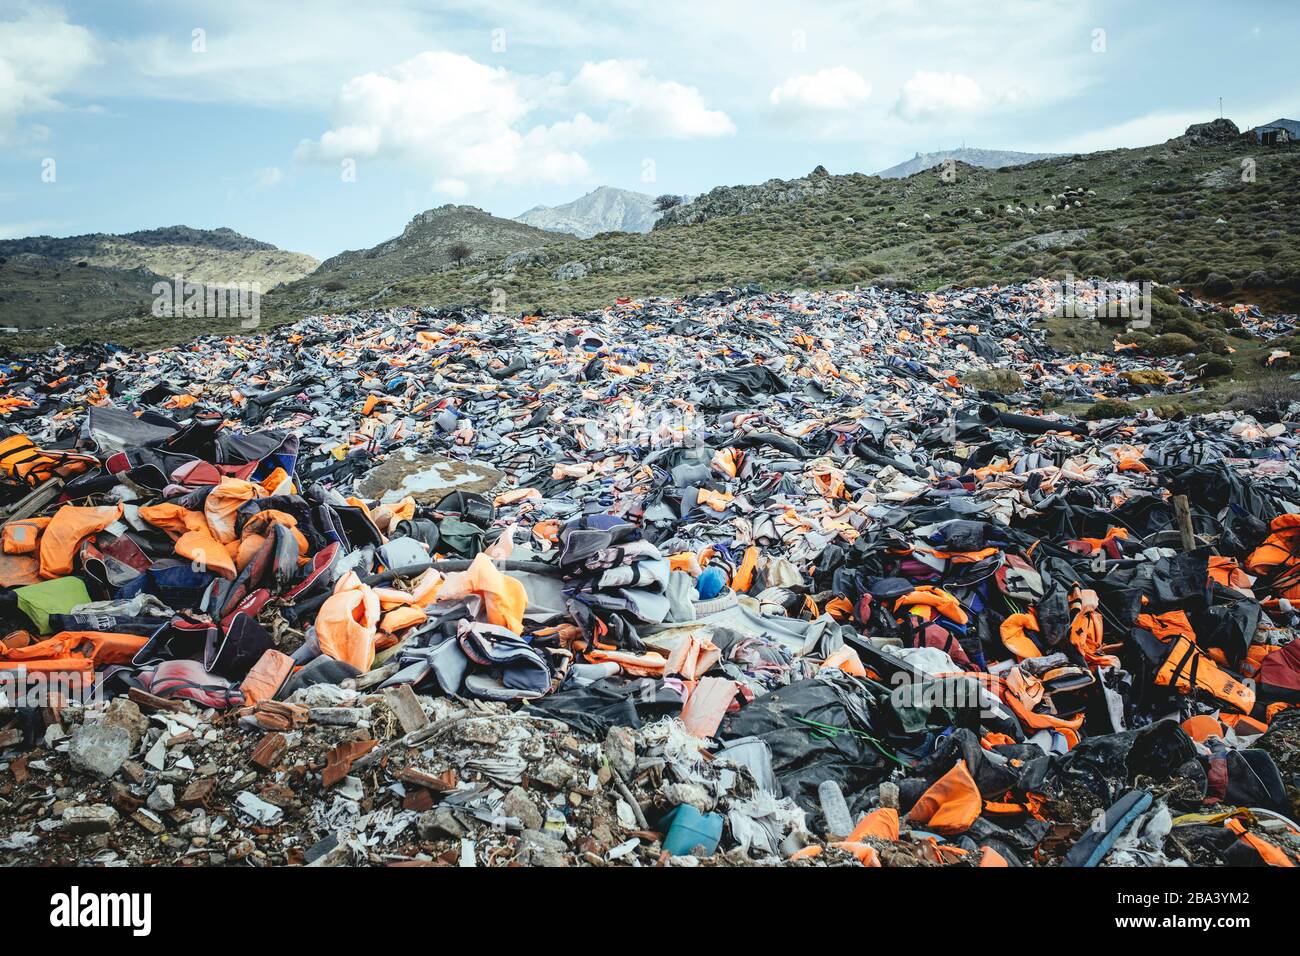 Chalecos salvavidas de refugiados en el vertedero de basura cerca de Molivos, Lesbos, Grecia Foto de stock